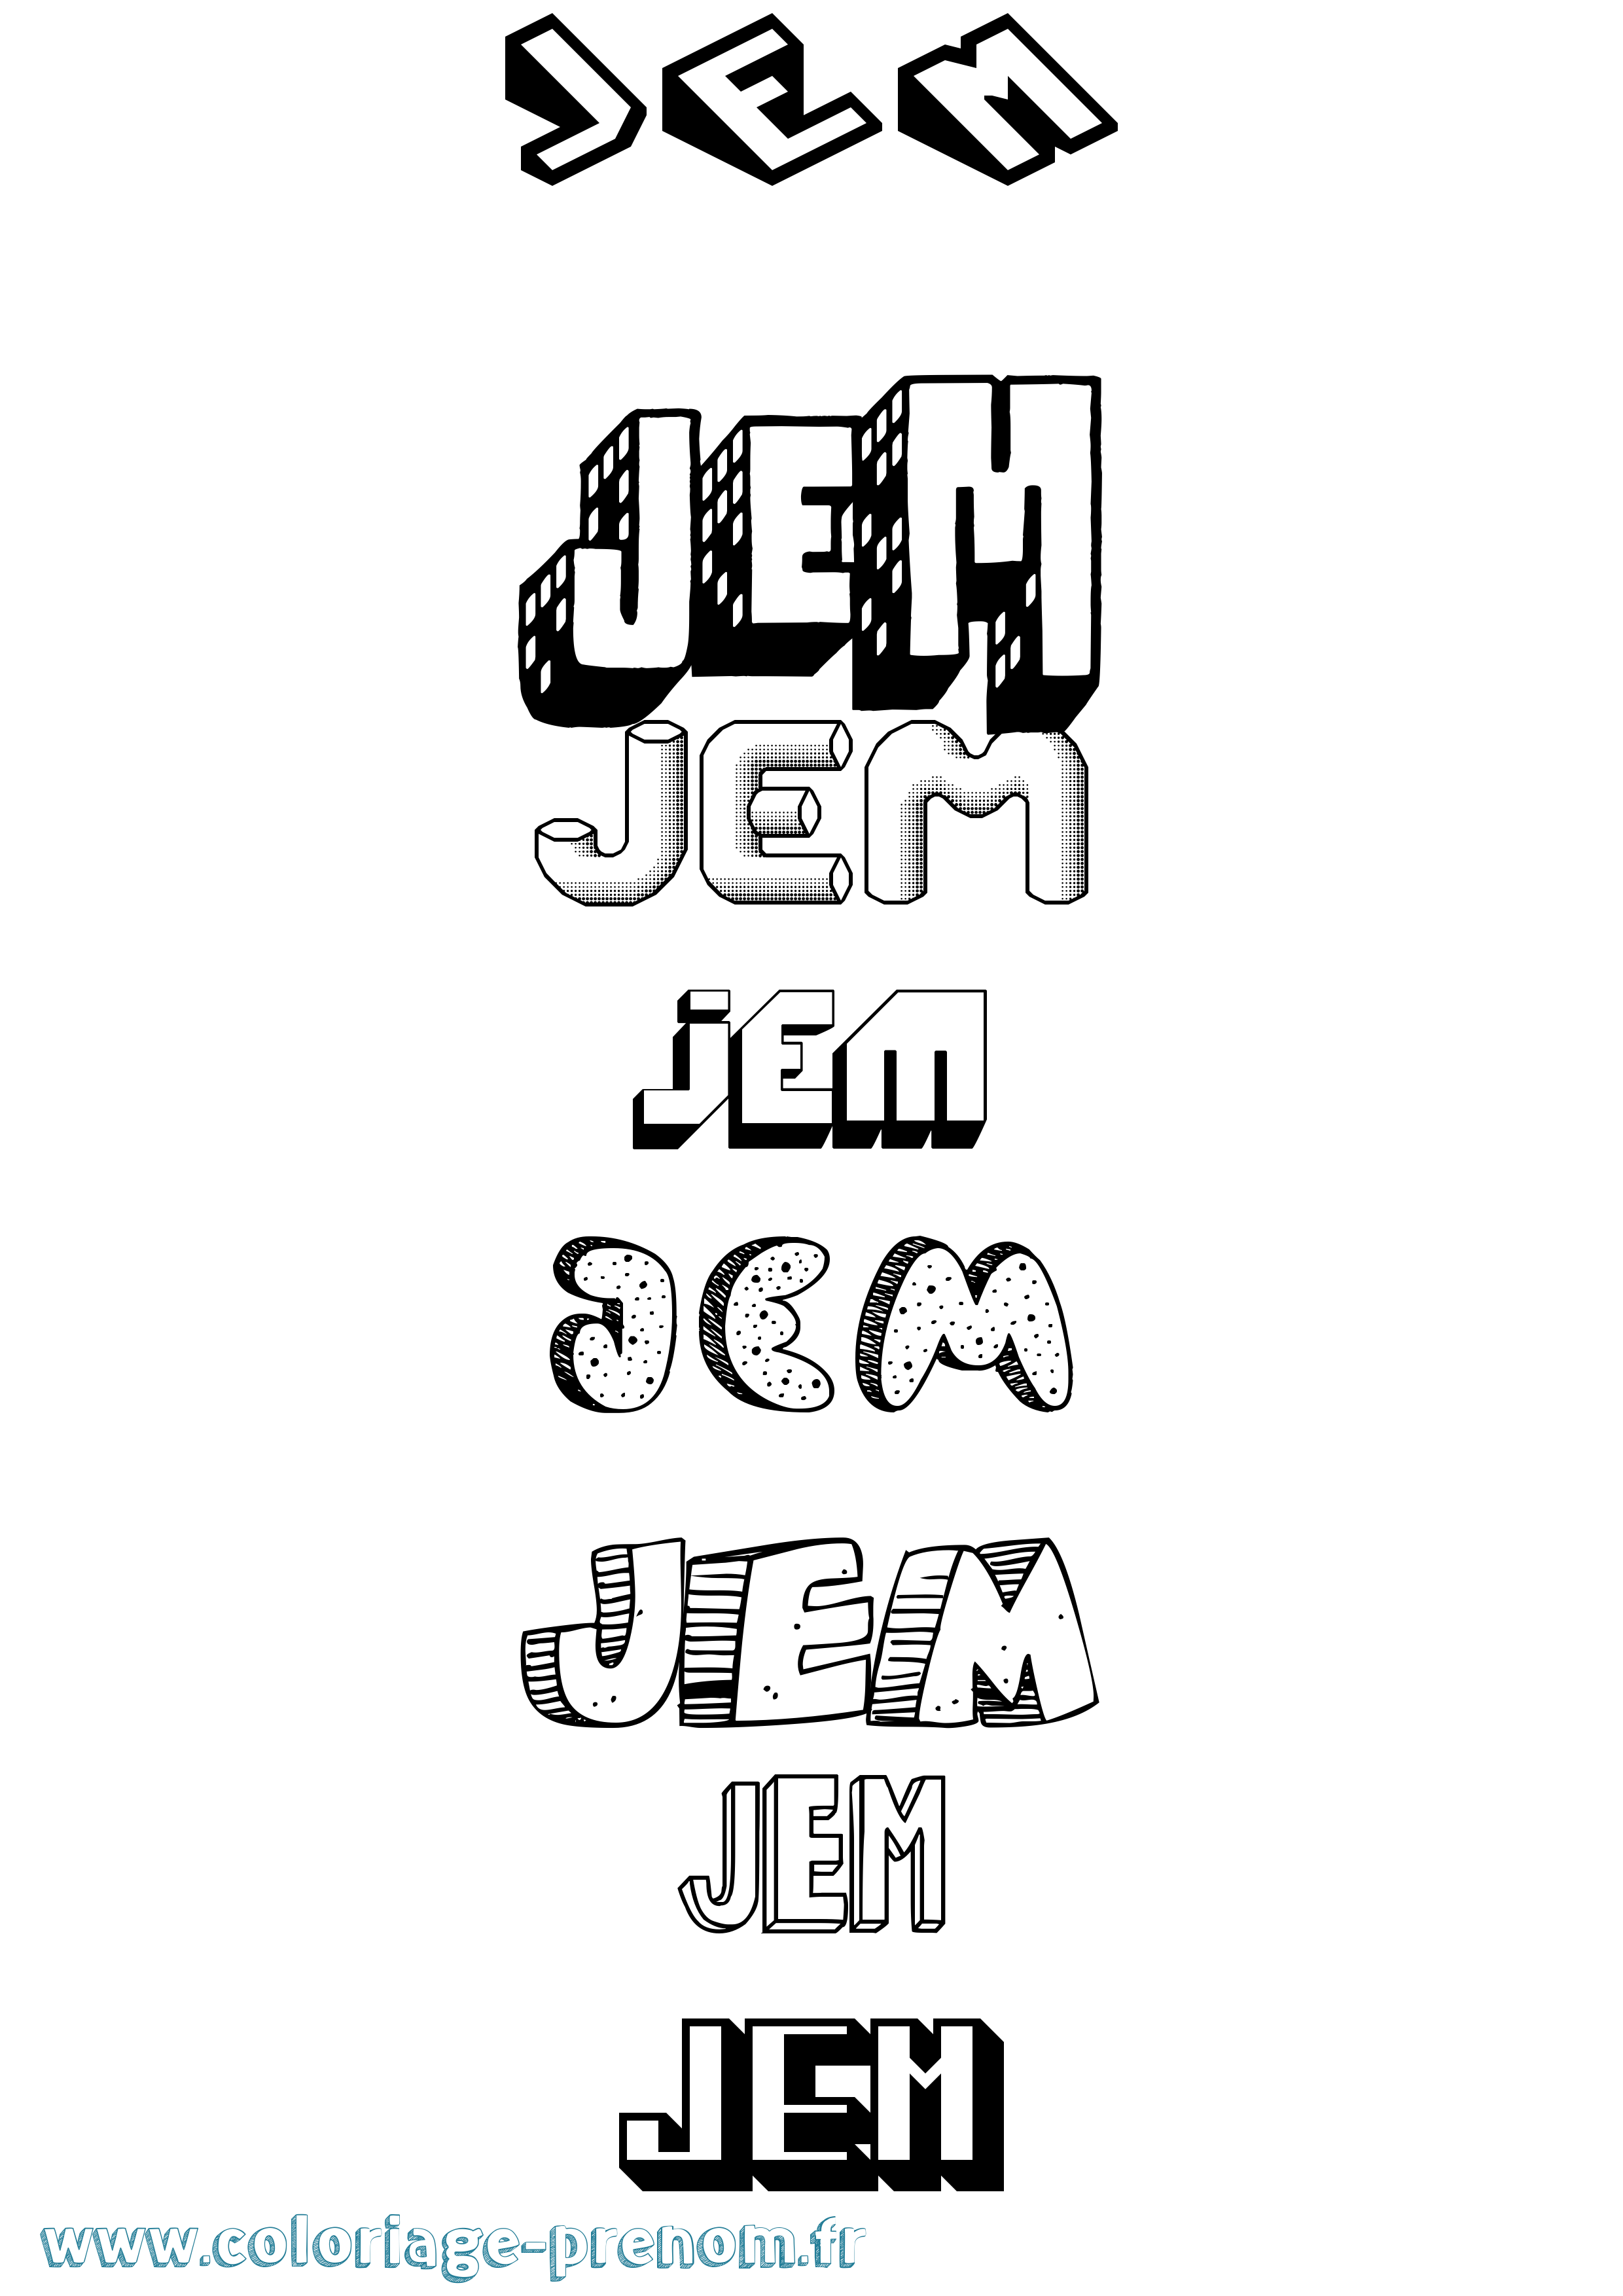 Coloriage prénom Jem Effet 3D